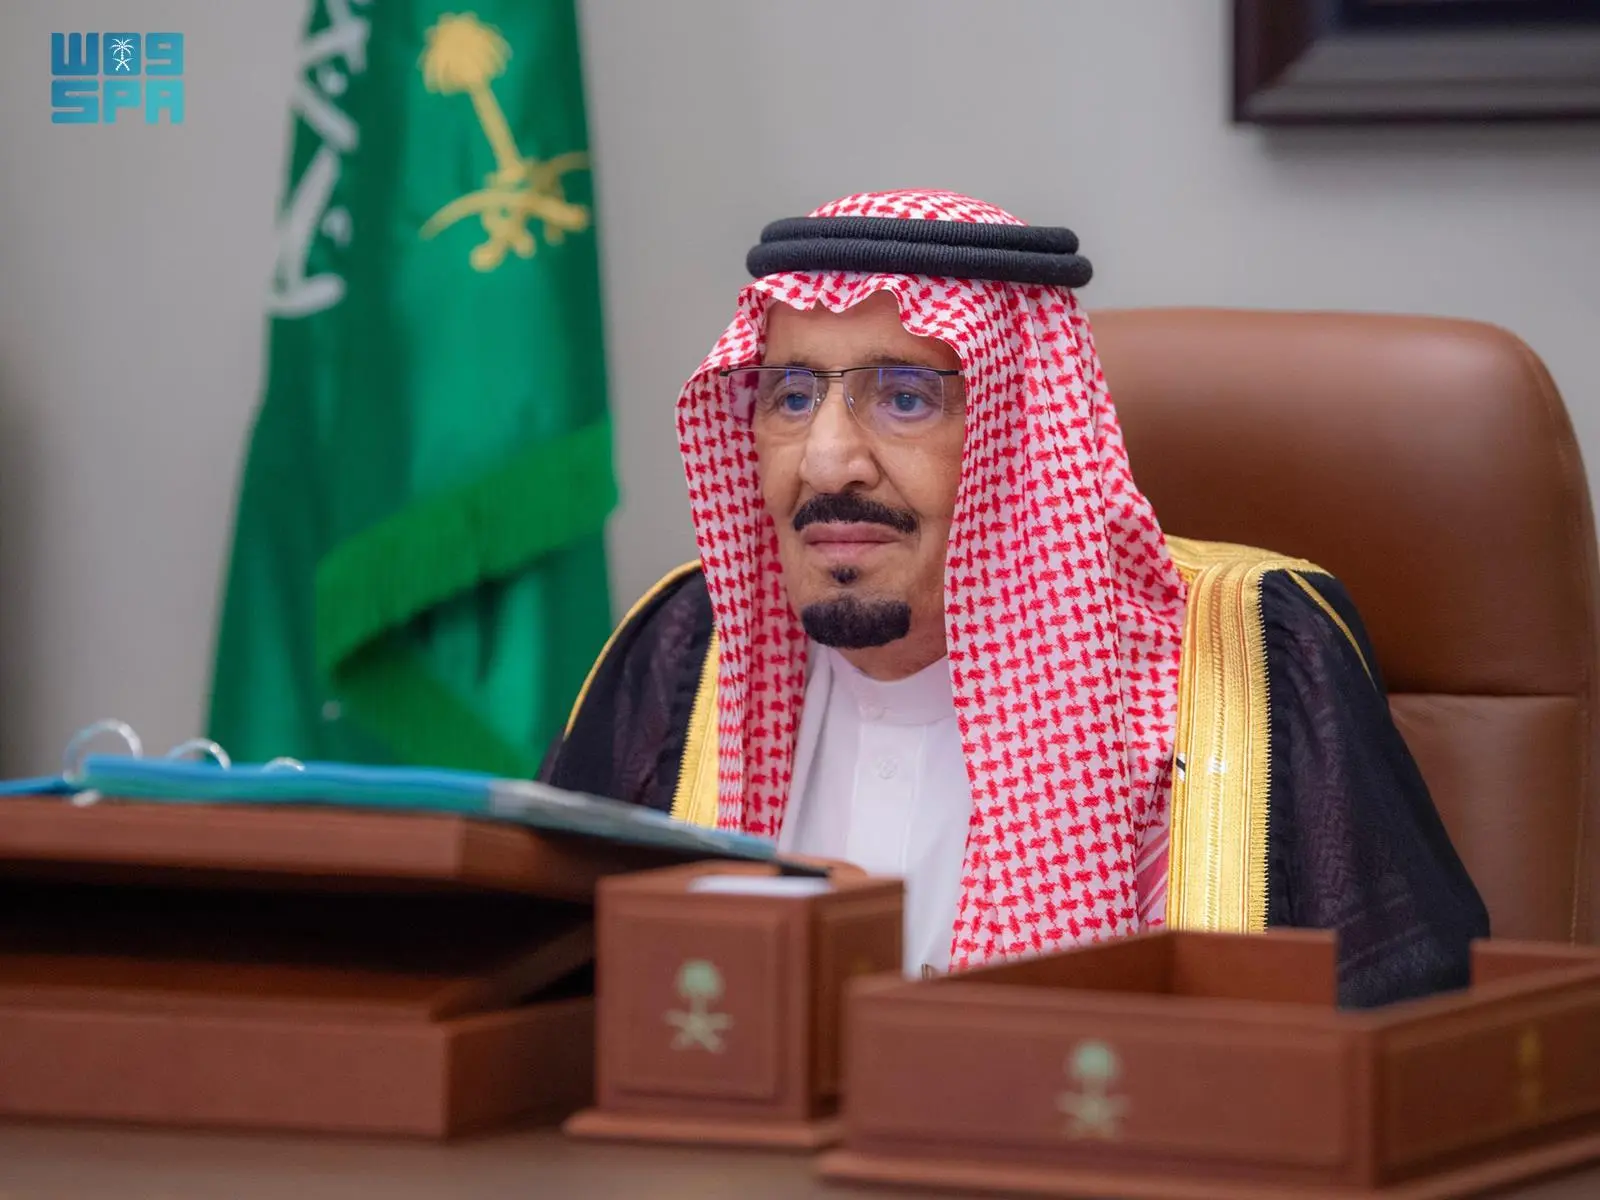 مجلس الوزراء يوافق على إنشاء مؤسسة باسم "مؤسسة الرياض الخضراء "